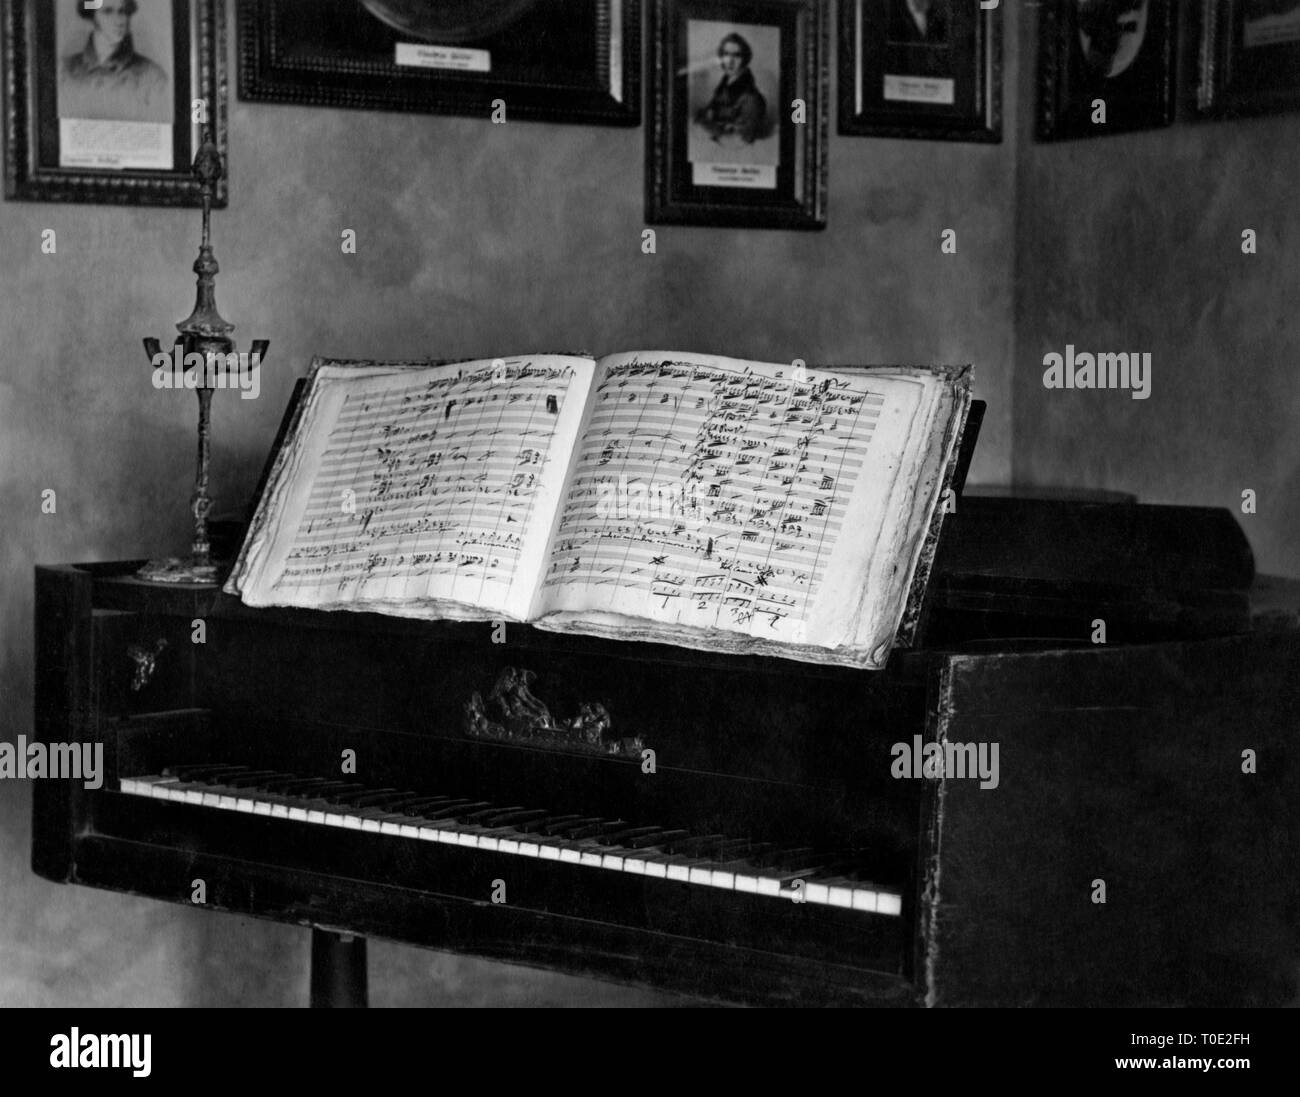 vincenzo bellini harpsichord, catania 1934 Stock Photo